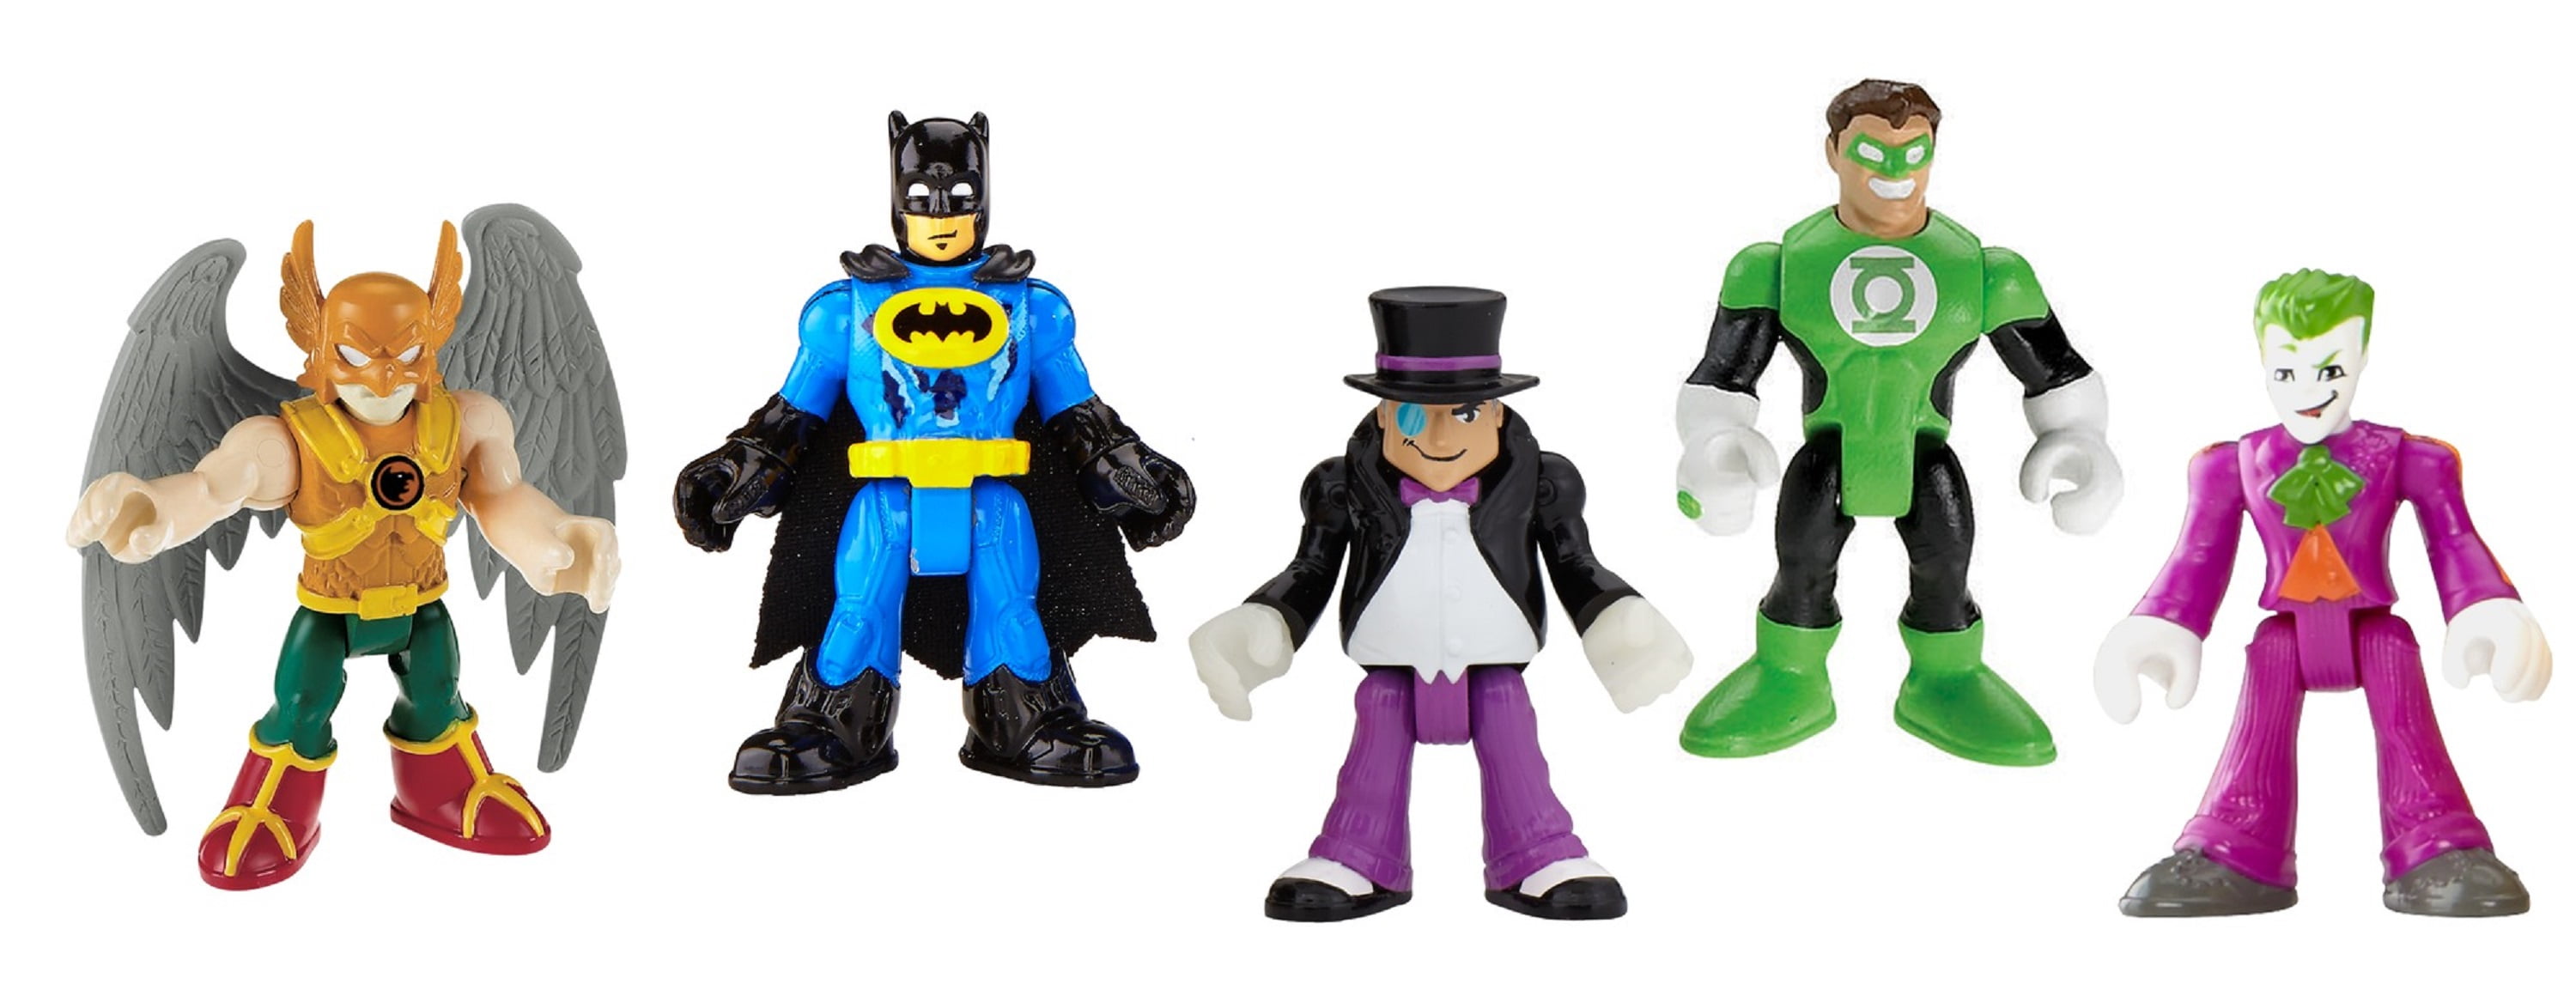 Heroes & Villains Imaginext Kohl's DC Super Friends Set W Brainiac MIP for sale online 